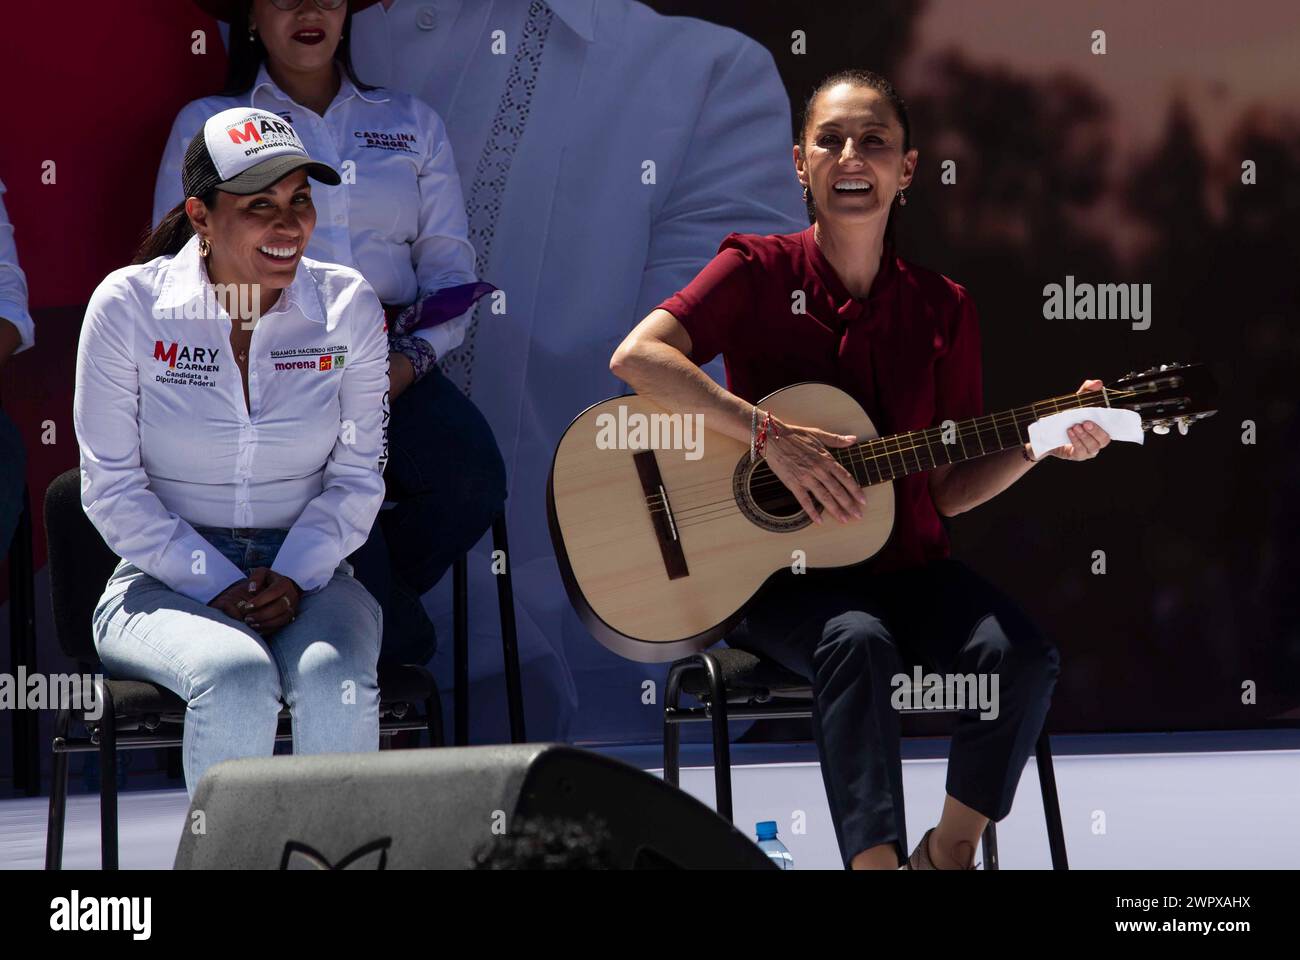 Morelia, Mexiko. März 2024. Dra. Claudia Sheinbaum während ihrer Rede im Morelos-Stadion, wo sich Hunderte von Unterstützern versammelten, um ihrer Rede zuzuhören und sie in ihrem Streben nach dem Präsidenten der Republik zu unterstützen. Quelle: Luis E Salgado/Alamy Live News Stockfoto